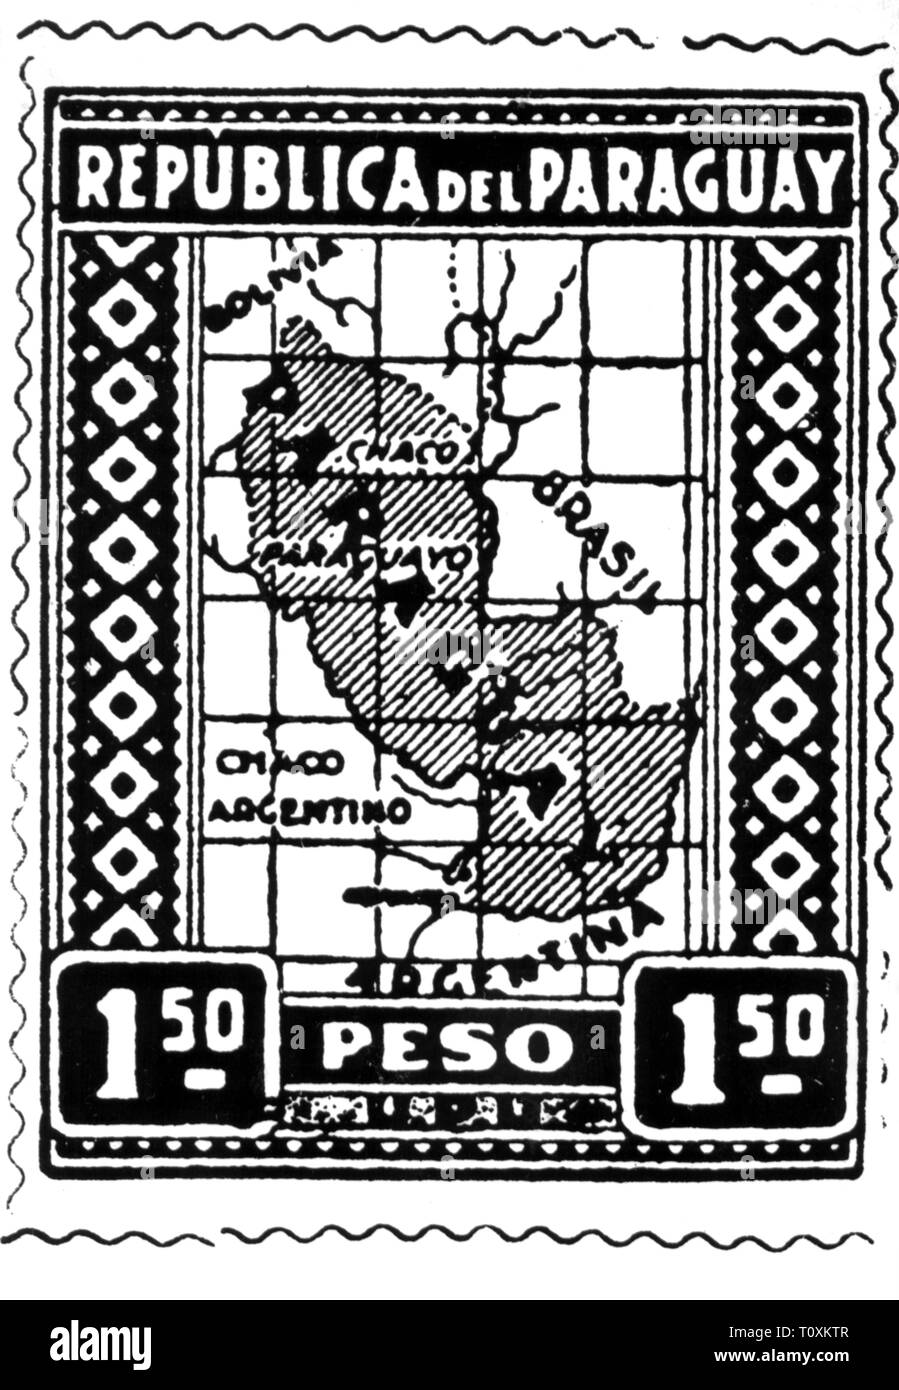 La poste, timbres, Paraguay, 1 peso 50 centavos timbre-poste, la carte, la date de publication : 1927, Additional-Rights Clearance-Info-Not-Available- Banque D'Images